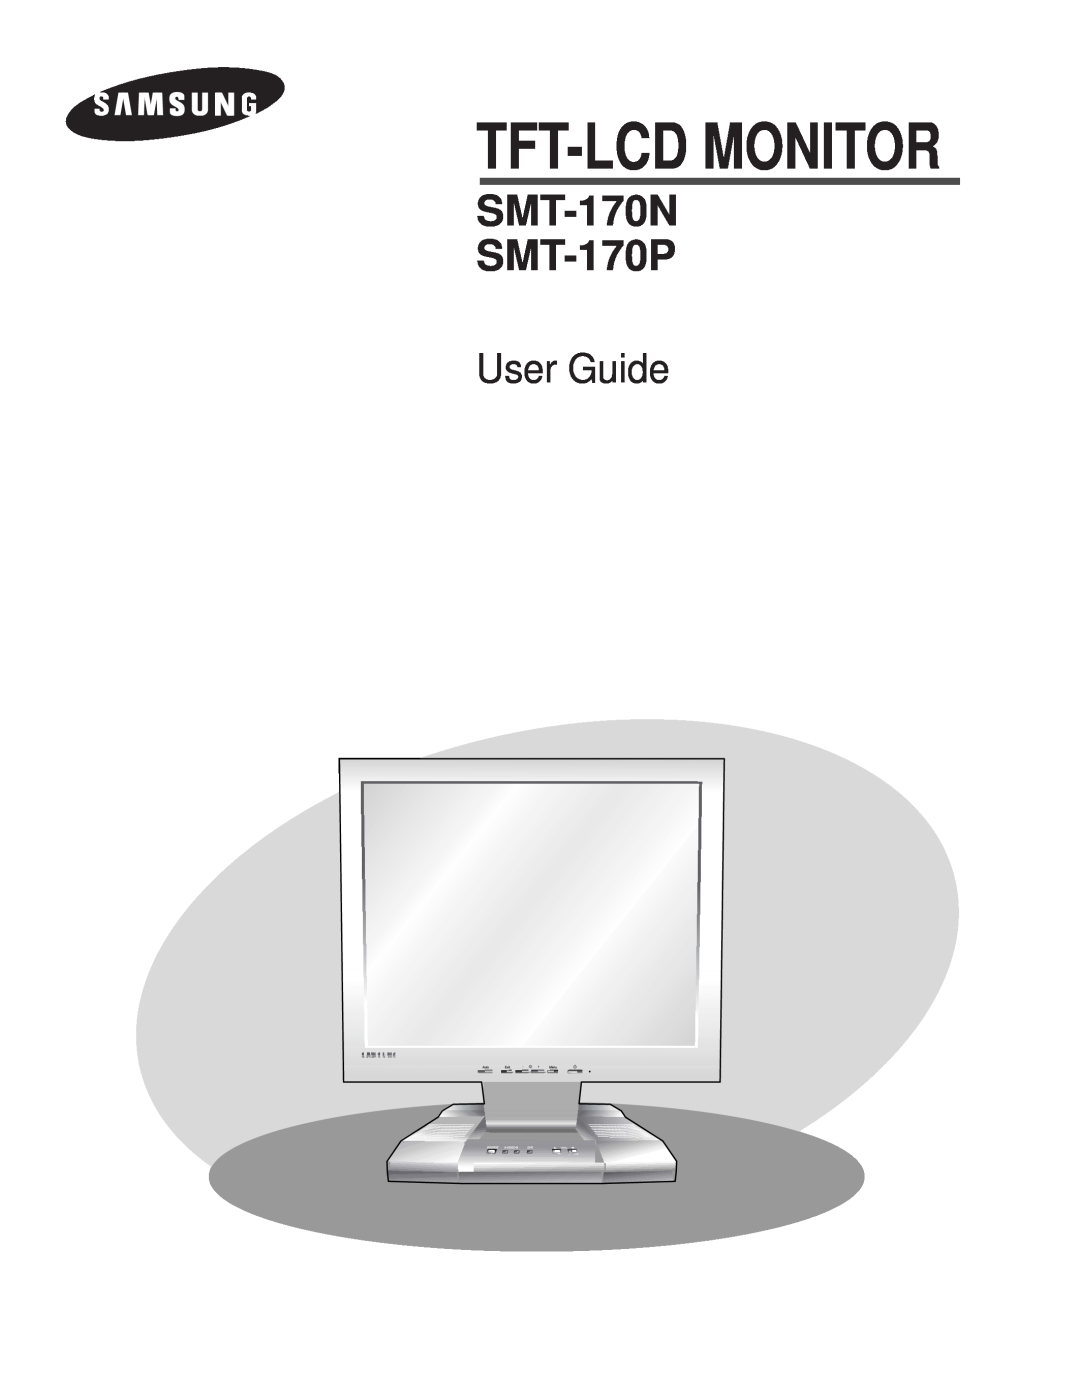 Samsung manual Tft-Lcd رﻮﺘﻴﻧﺎﻣ, هﺪﻨﻨﻛ هدﺎﻔﺘﺳا يﺎﻤﻨﻫار, SMT-170N SMT-170P, SM170NP-Farsi, 2004.6.22, 1140 AM 